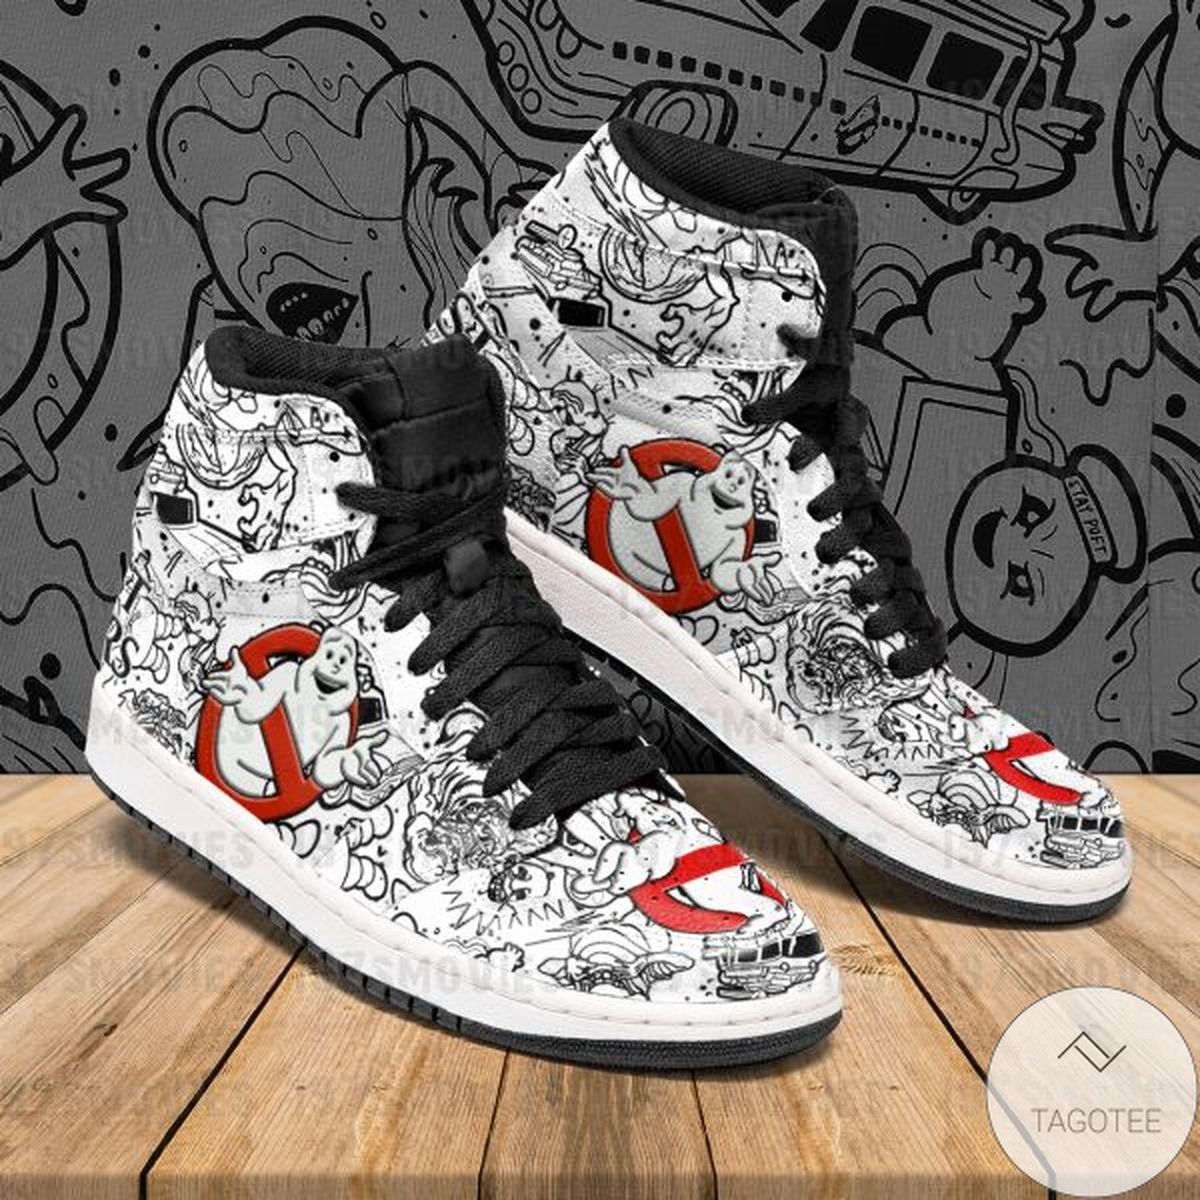 Ghostbusters Sneaker Air Jordan High Top Shoes